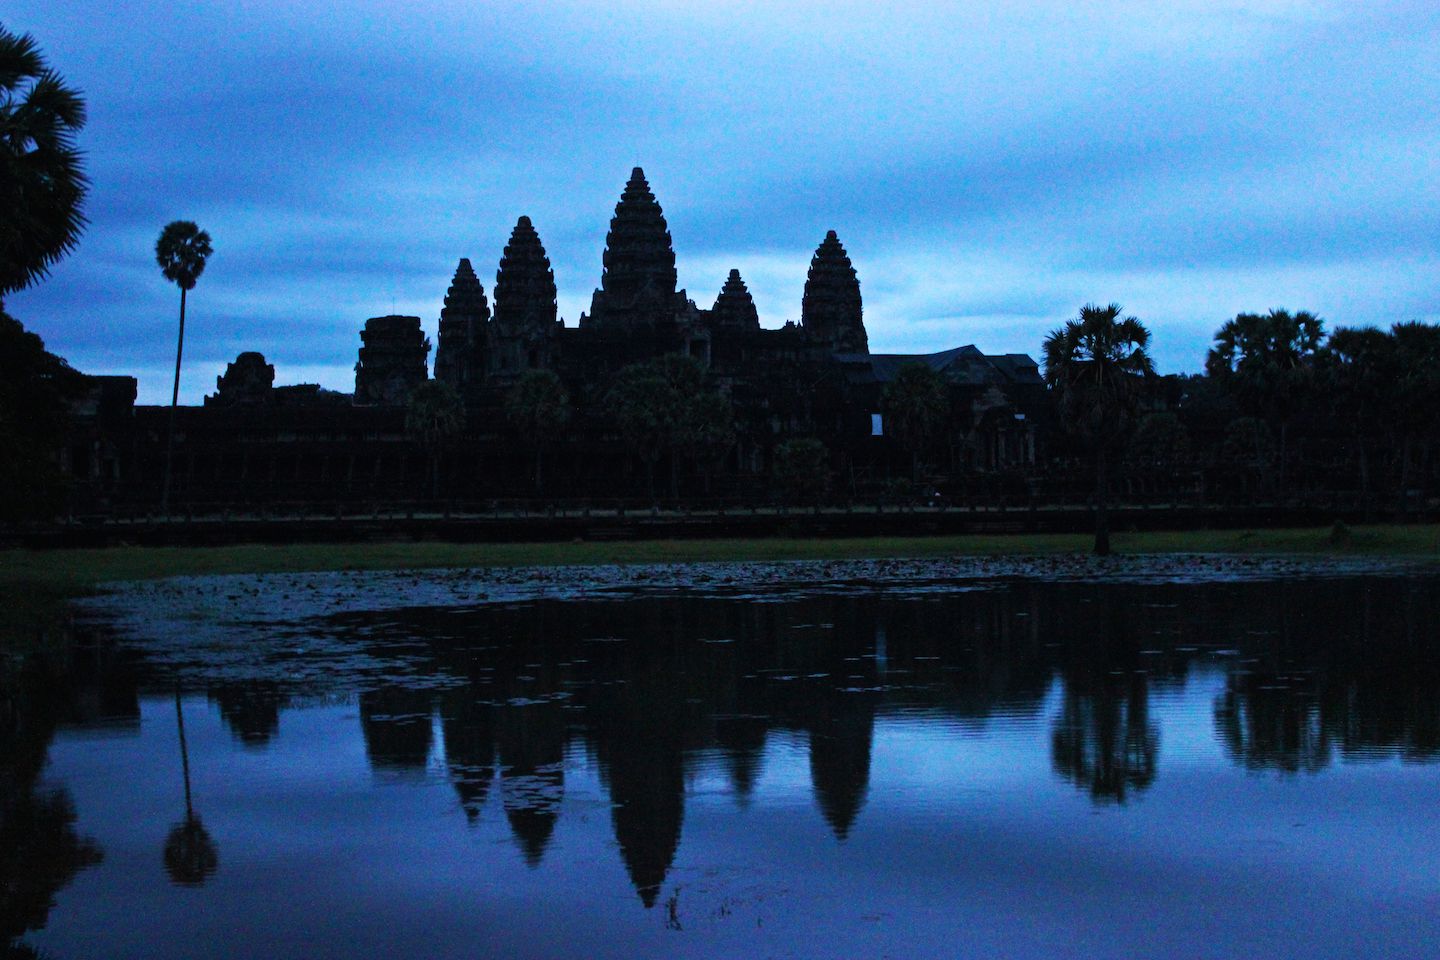 Second attemp: Angkor Wat at dawn